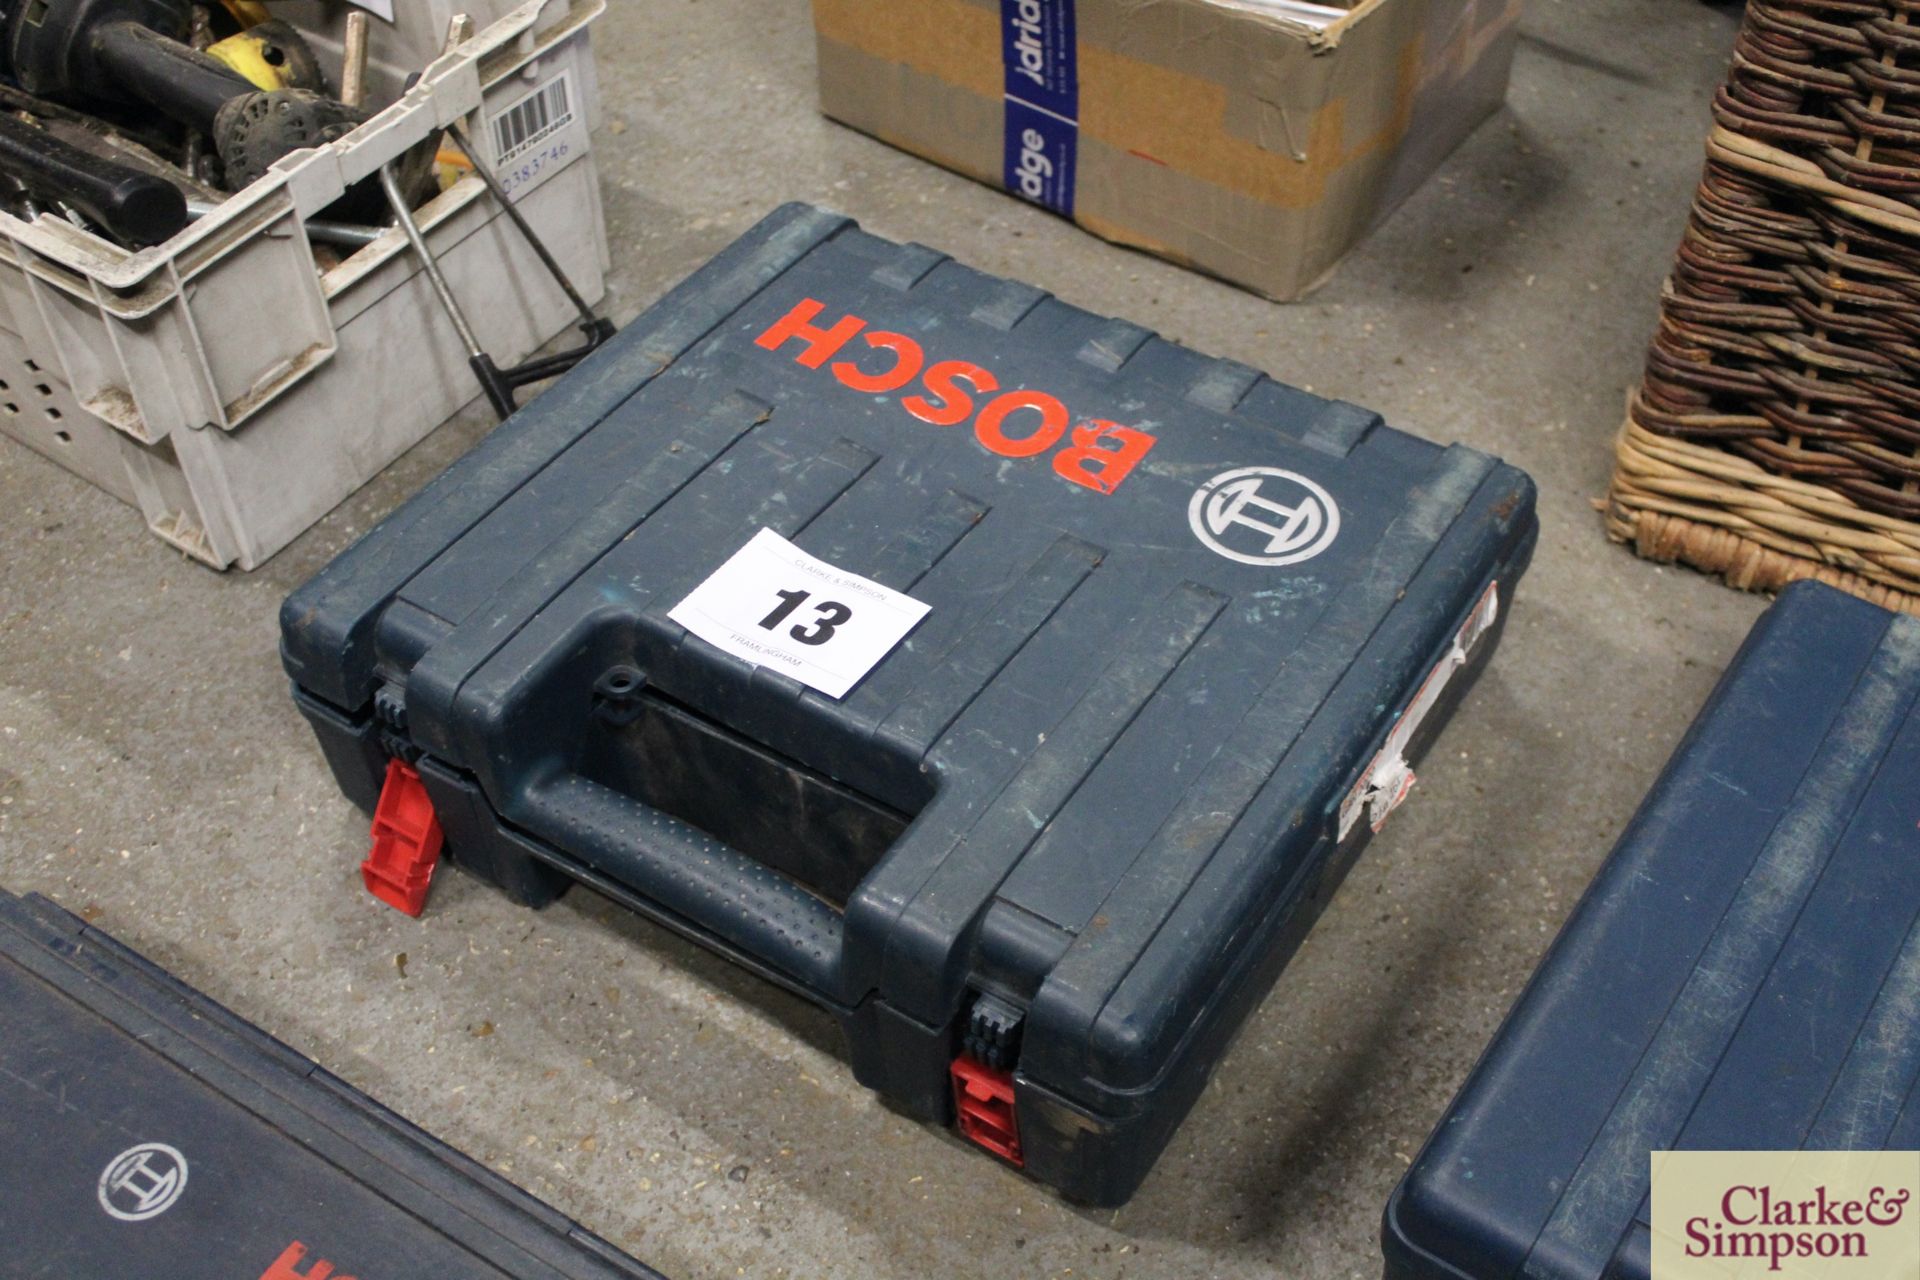 Bosch 110v SDS drill in case.